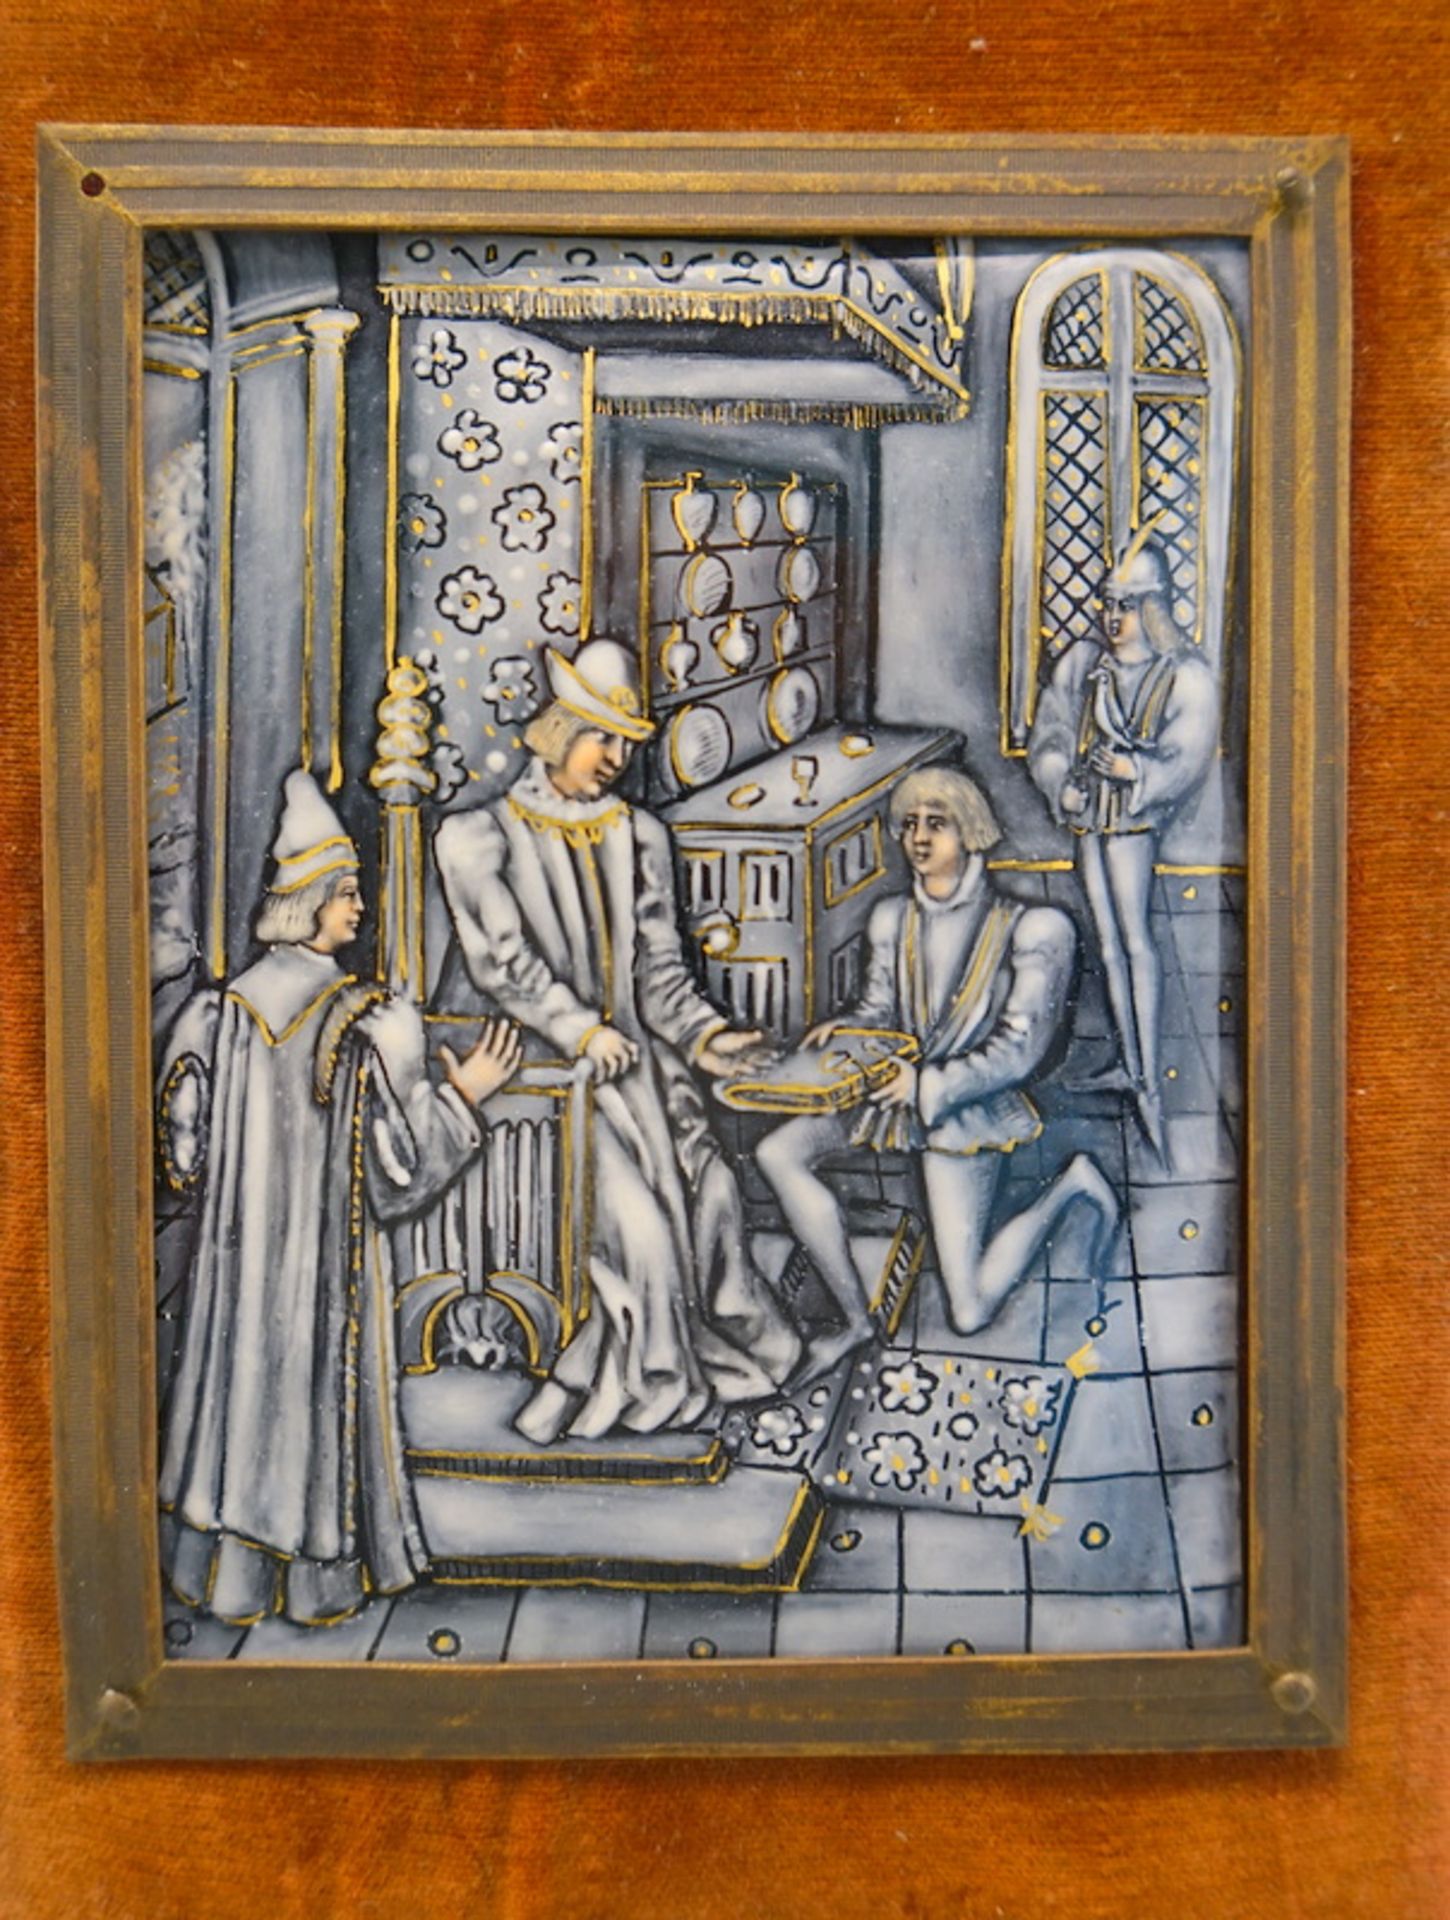 Emailleplakette mit höfischer Szene, Limoges 19. Jhd. - Image 2 of 4